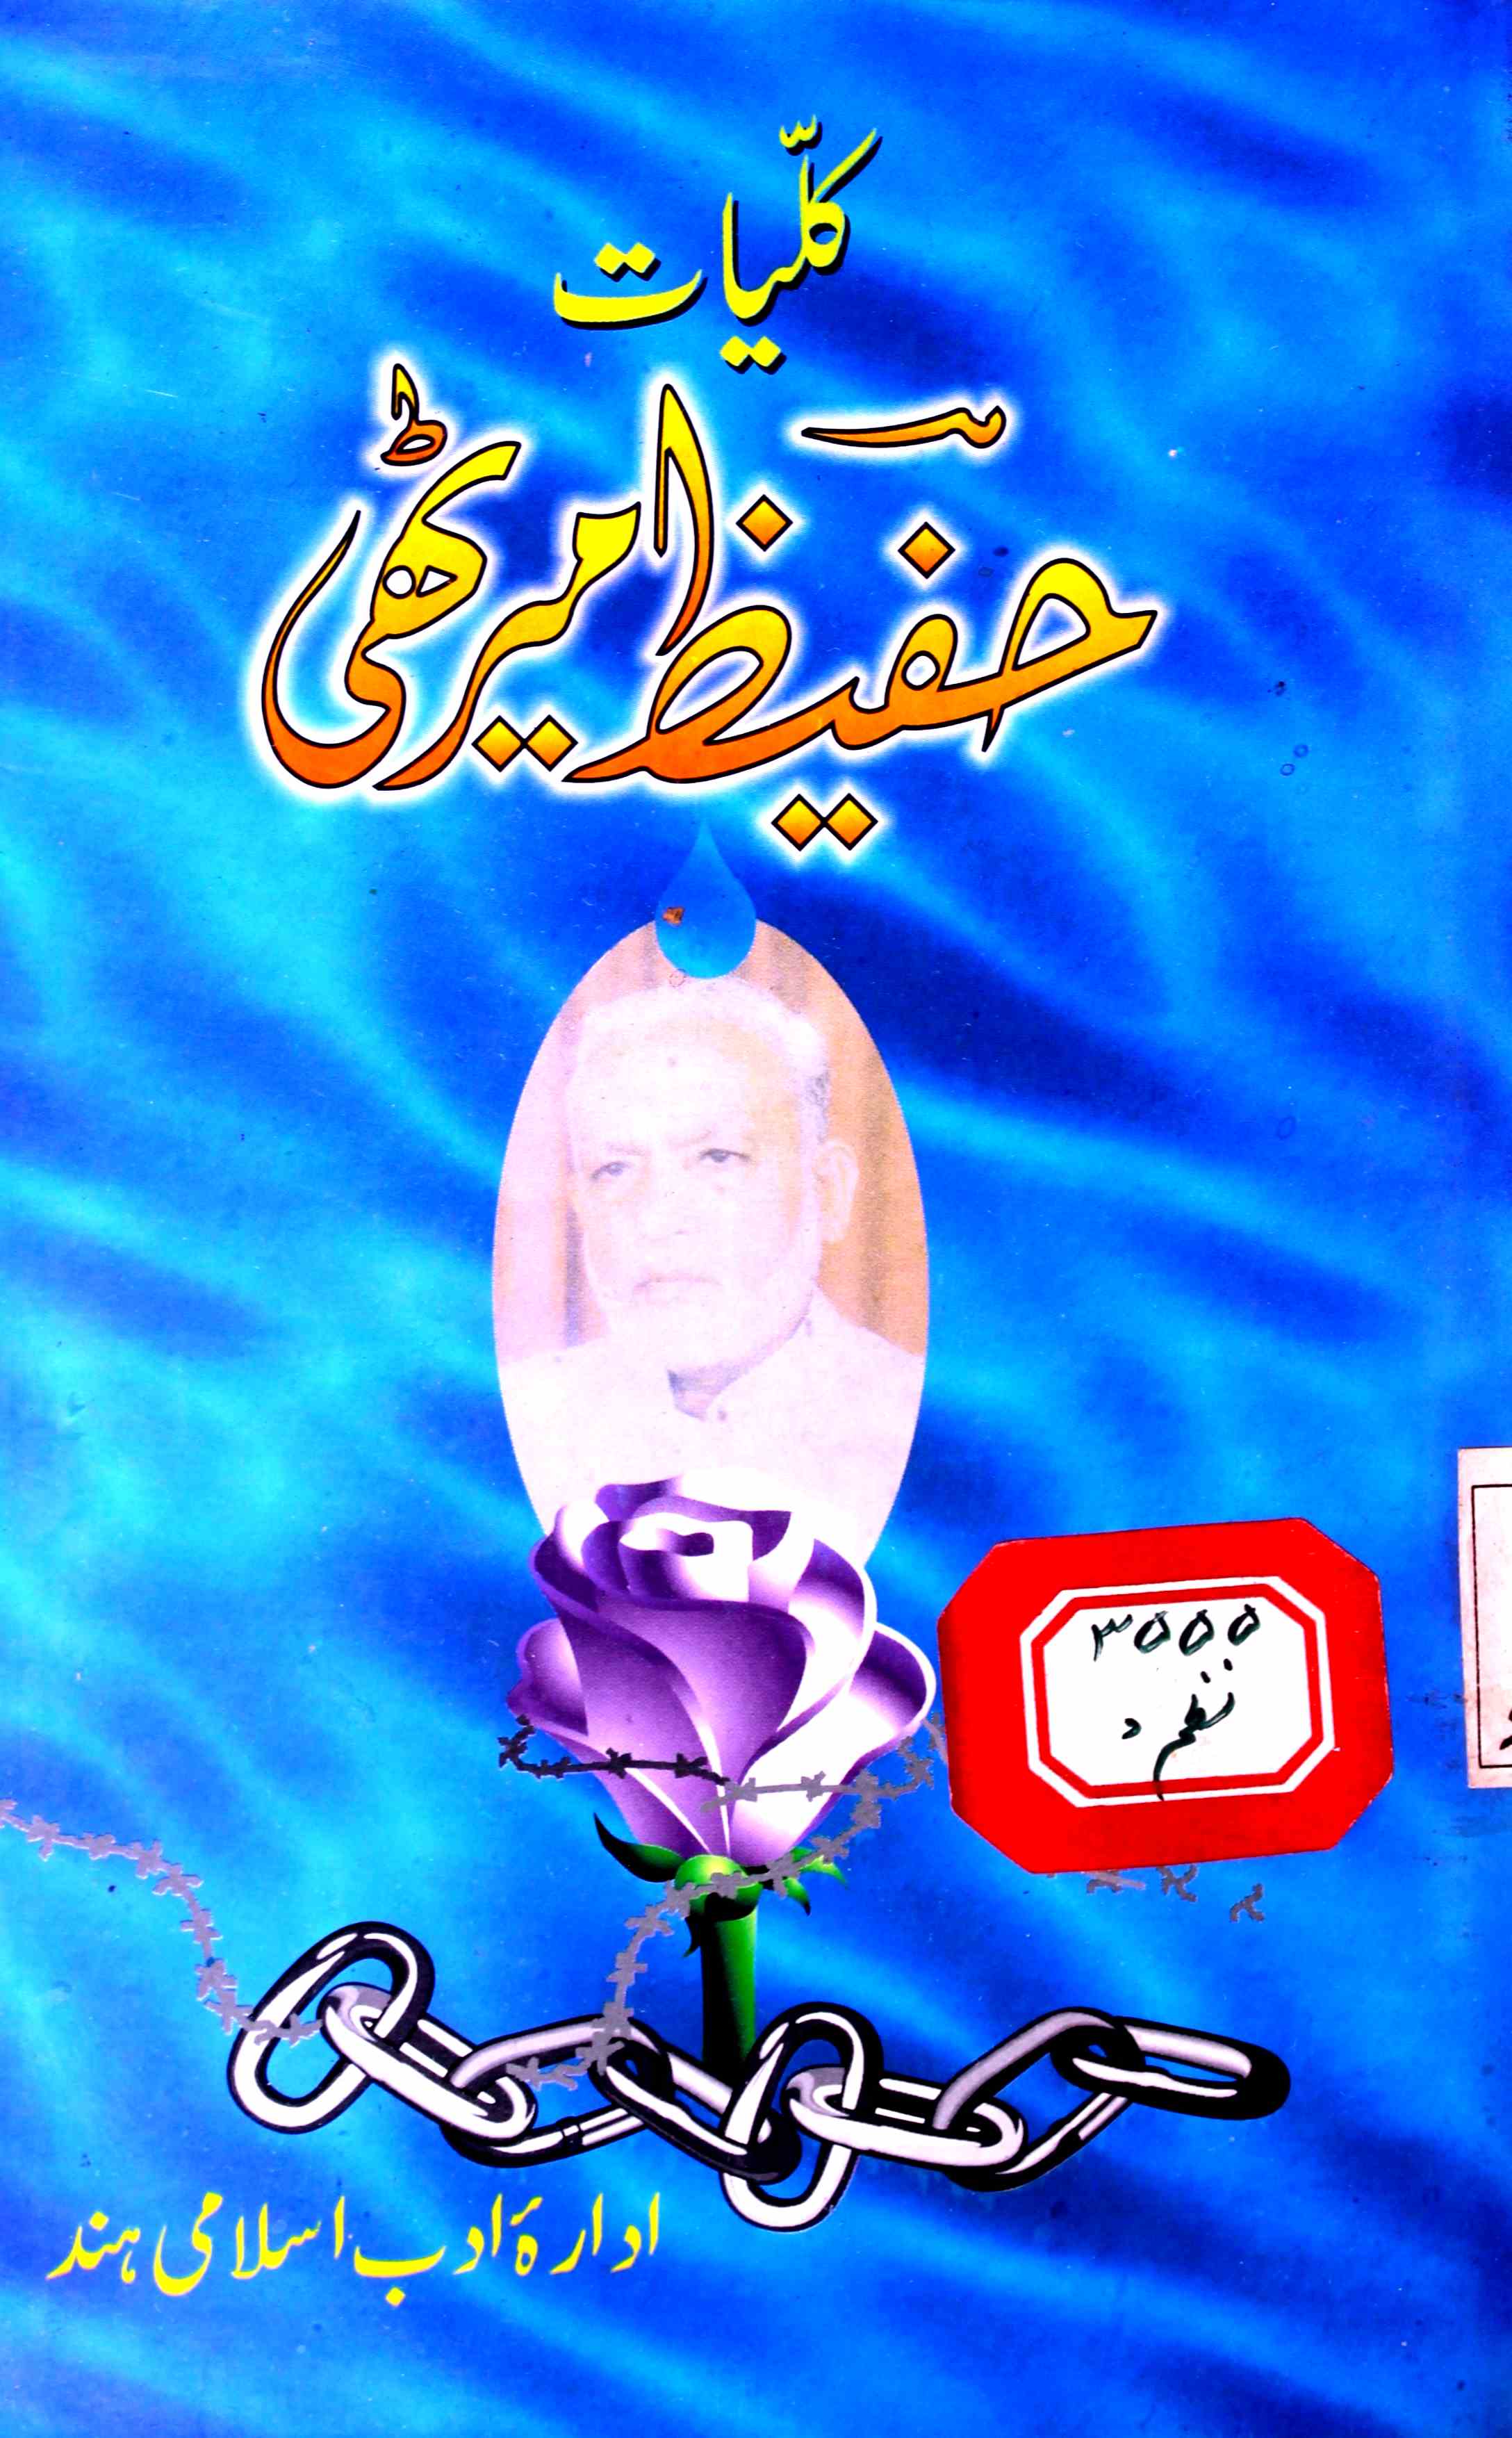 Kulliyat-e-Hafeez Merathi